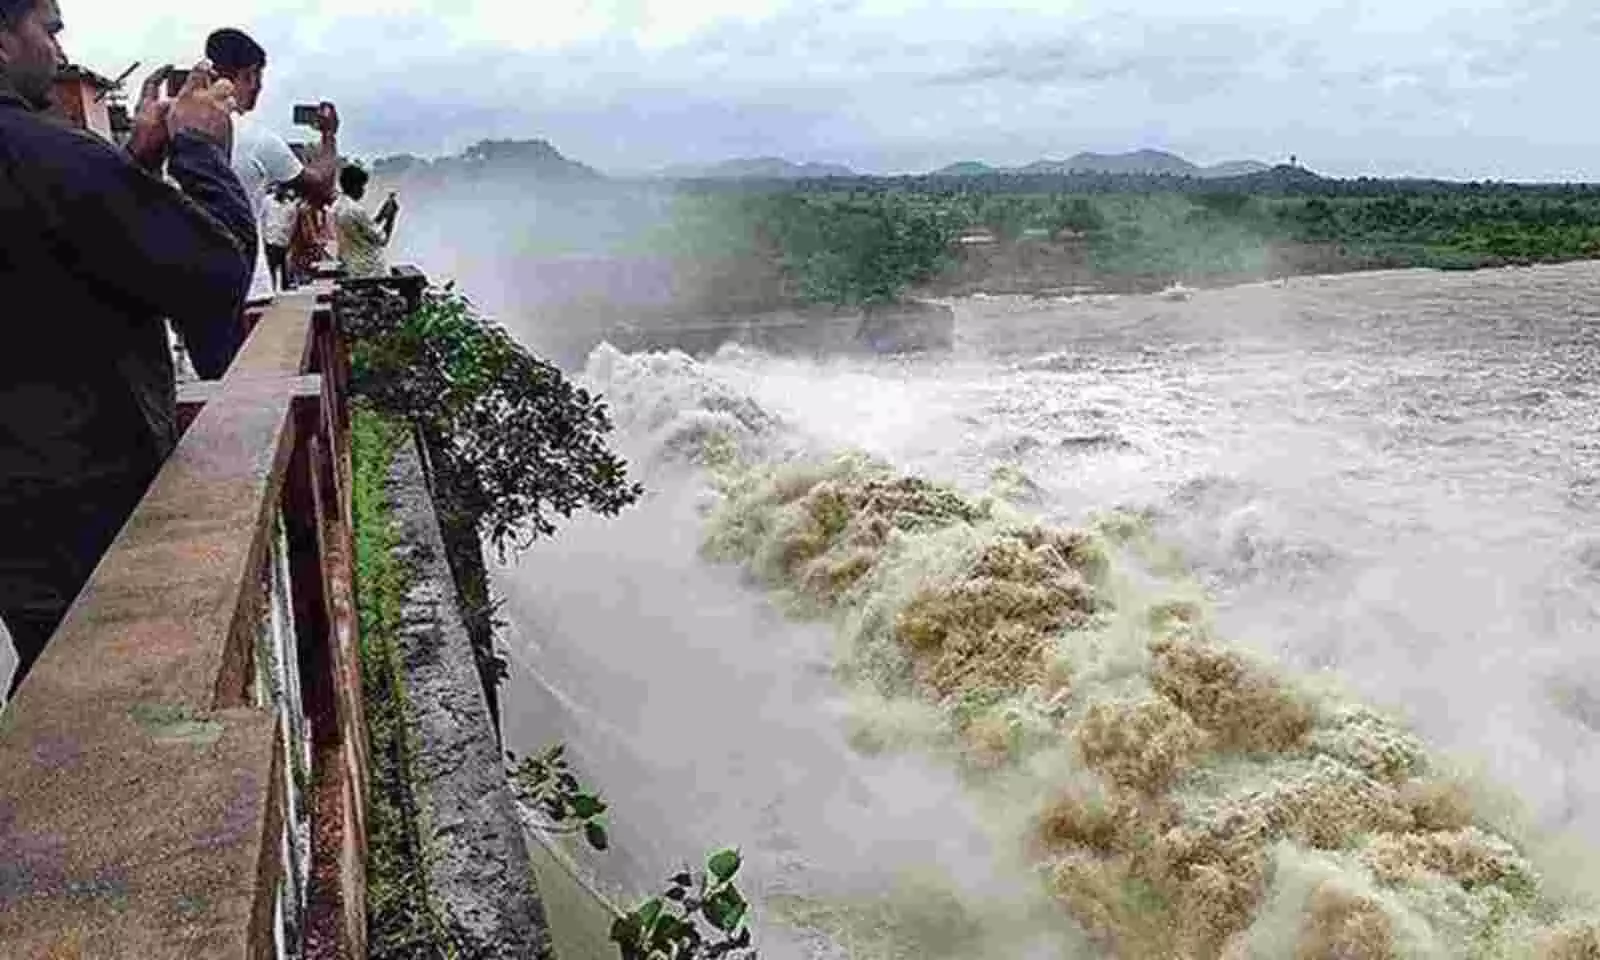 Telangana state में एक जलाशय में बाढ़ के खतरे में होने की सूचना